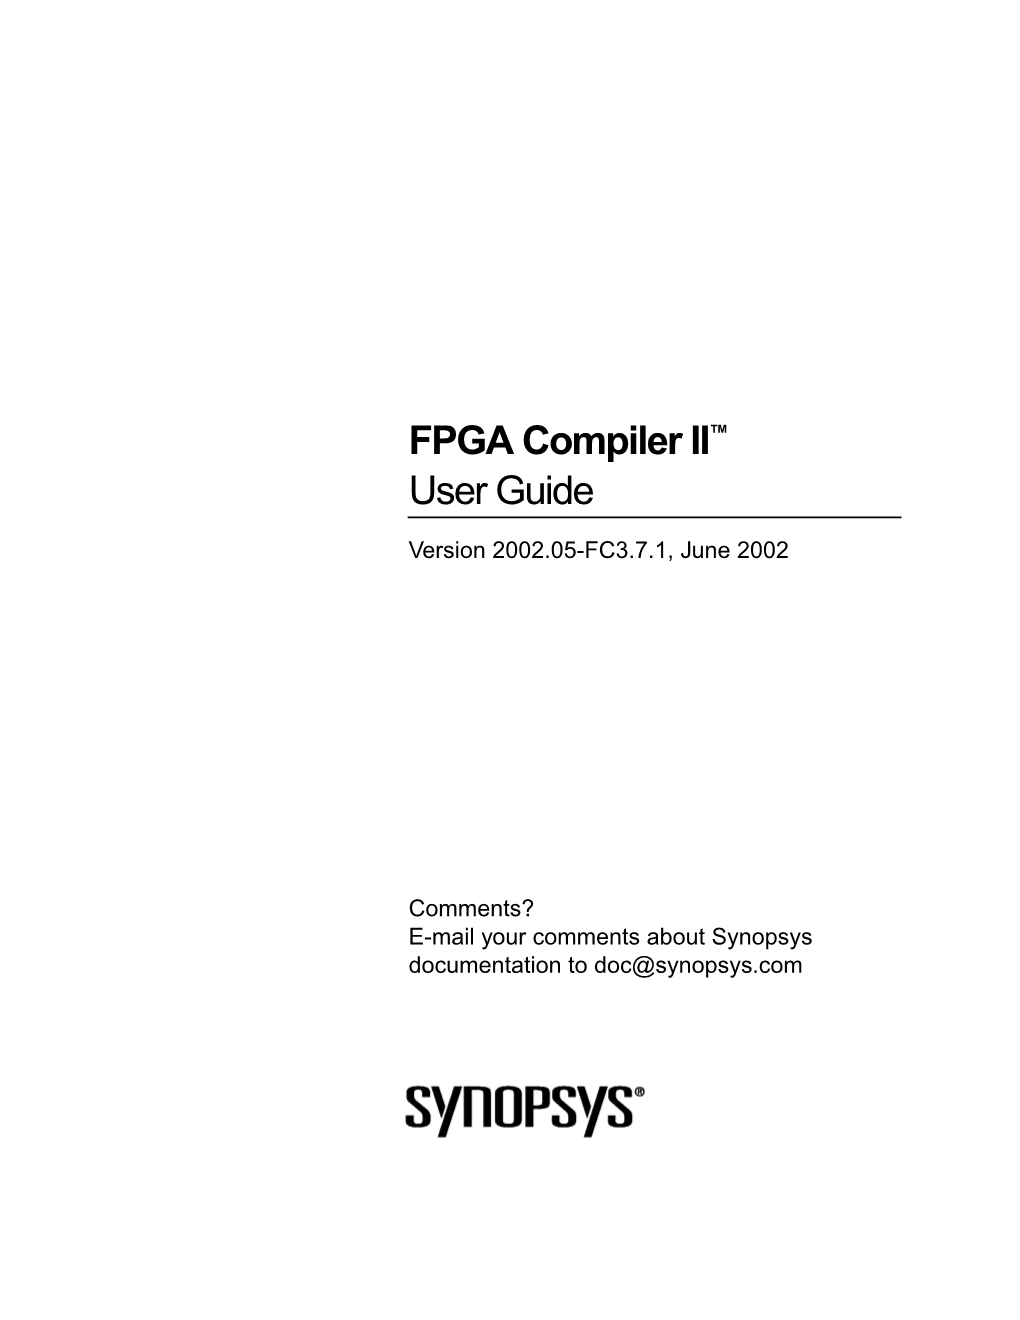 FPGA Compiler II™ User Guide